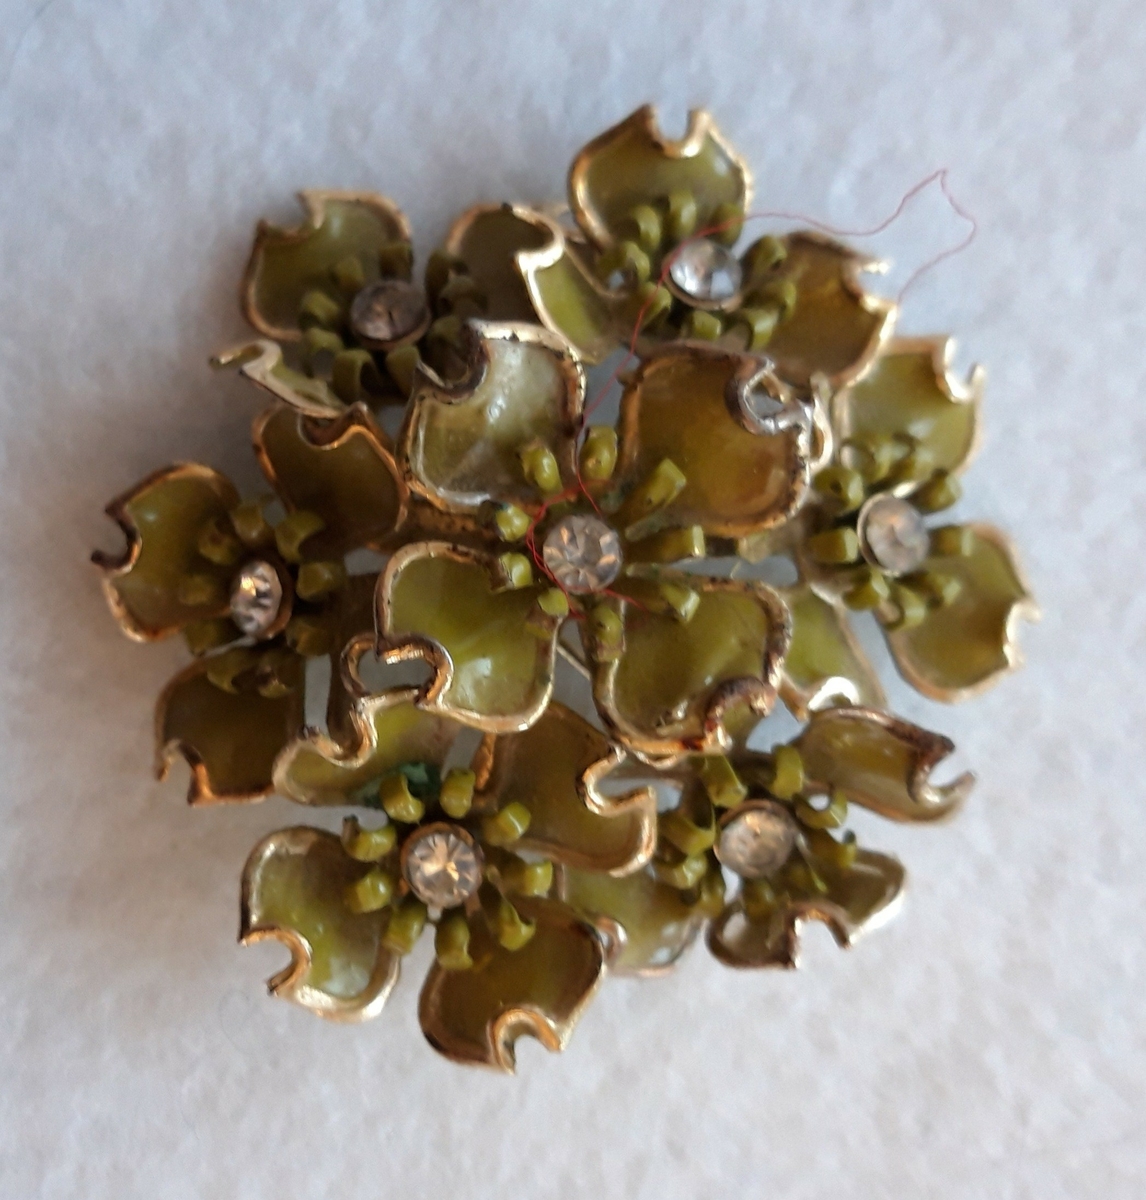 Nål i metall. Sju blomsterkroner er satt sammen og danner en rund nål. Kronbladene er lakkert i en gulgrønn farge. En klar sten er montert i midten av hver blomst.